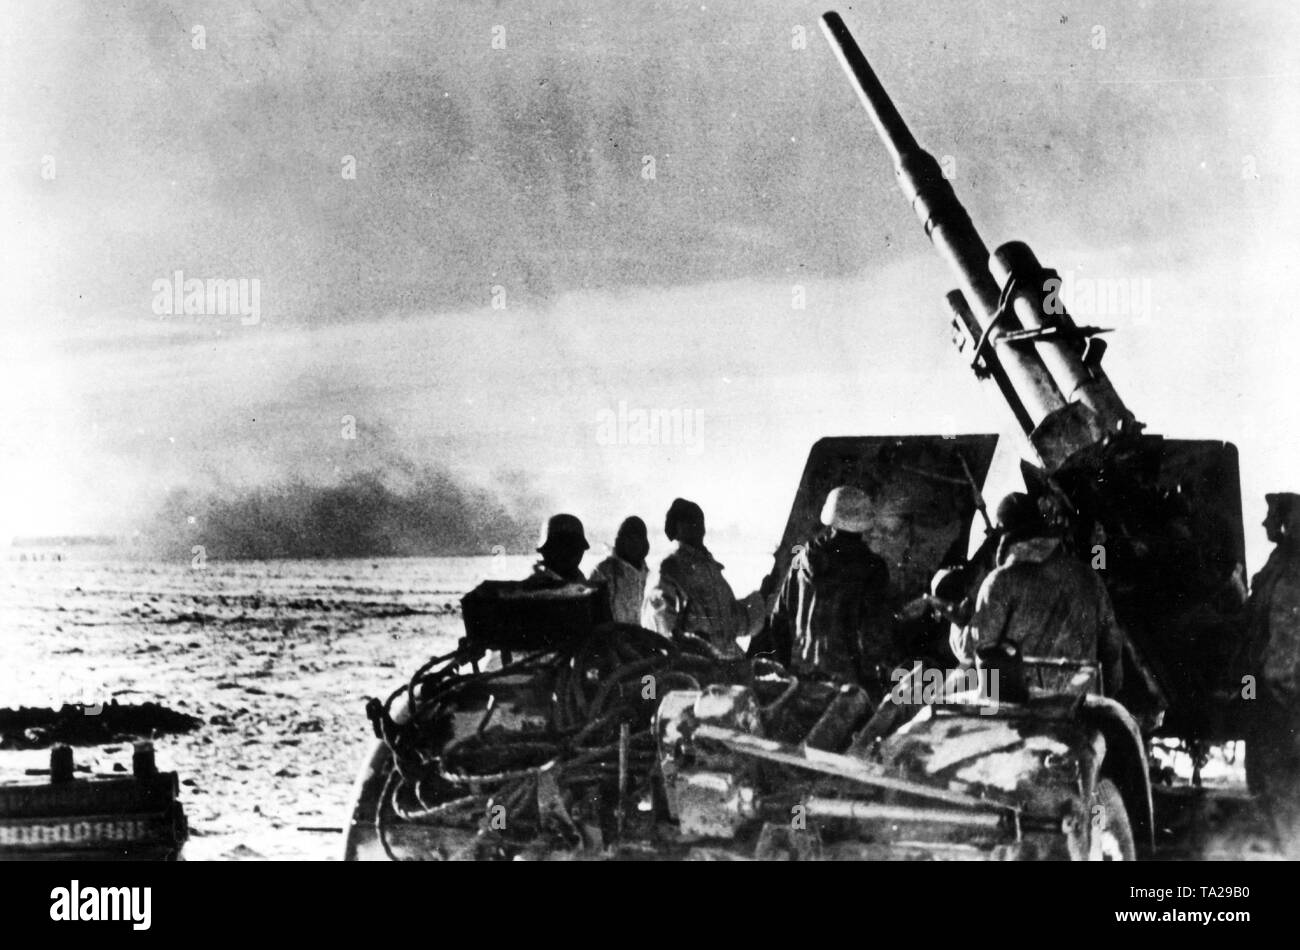 La foto mostra un 8.8 cm Flak 41, un pesante anti-aerei pistola nella lotta contro il russo contro aerei che attaccano convogli di profughi e colonne di alimentazione. Foto Stock